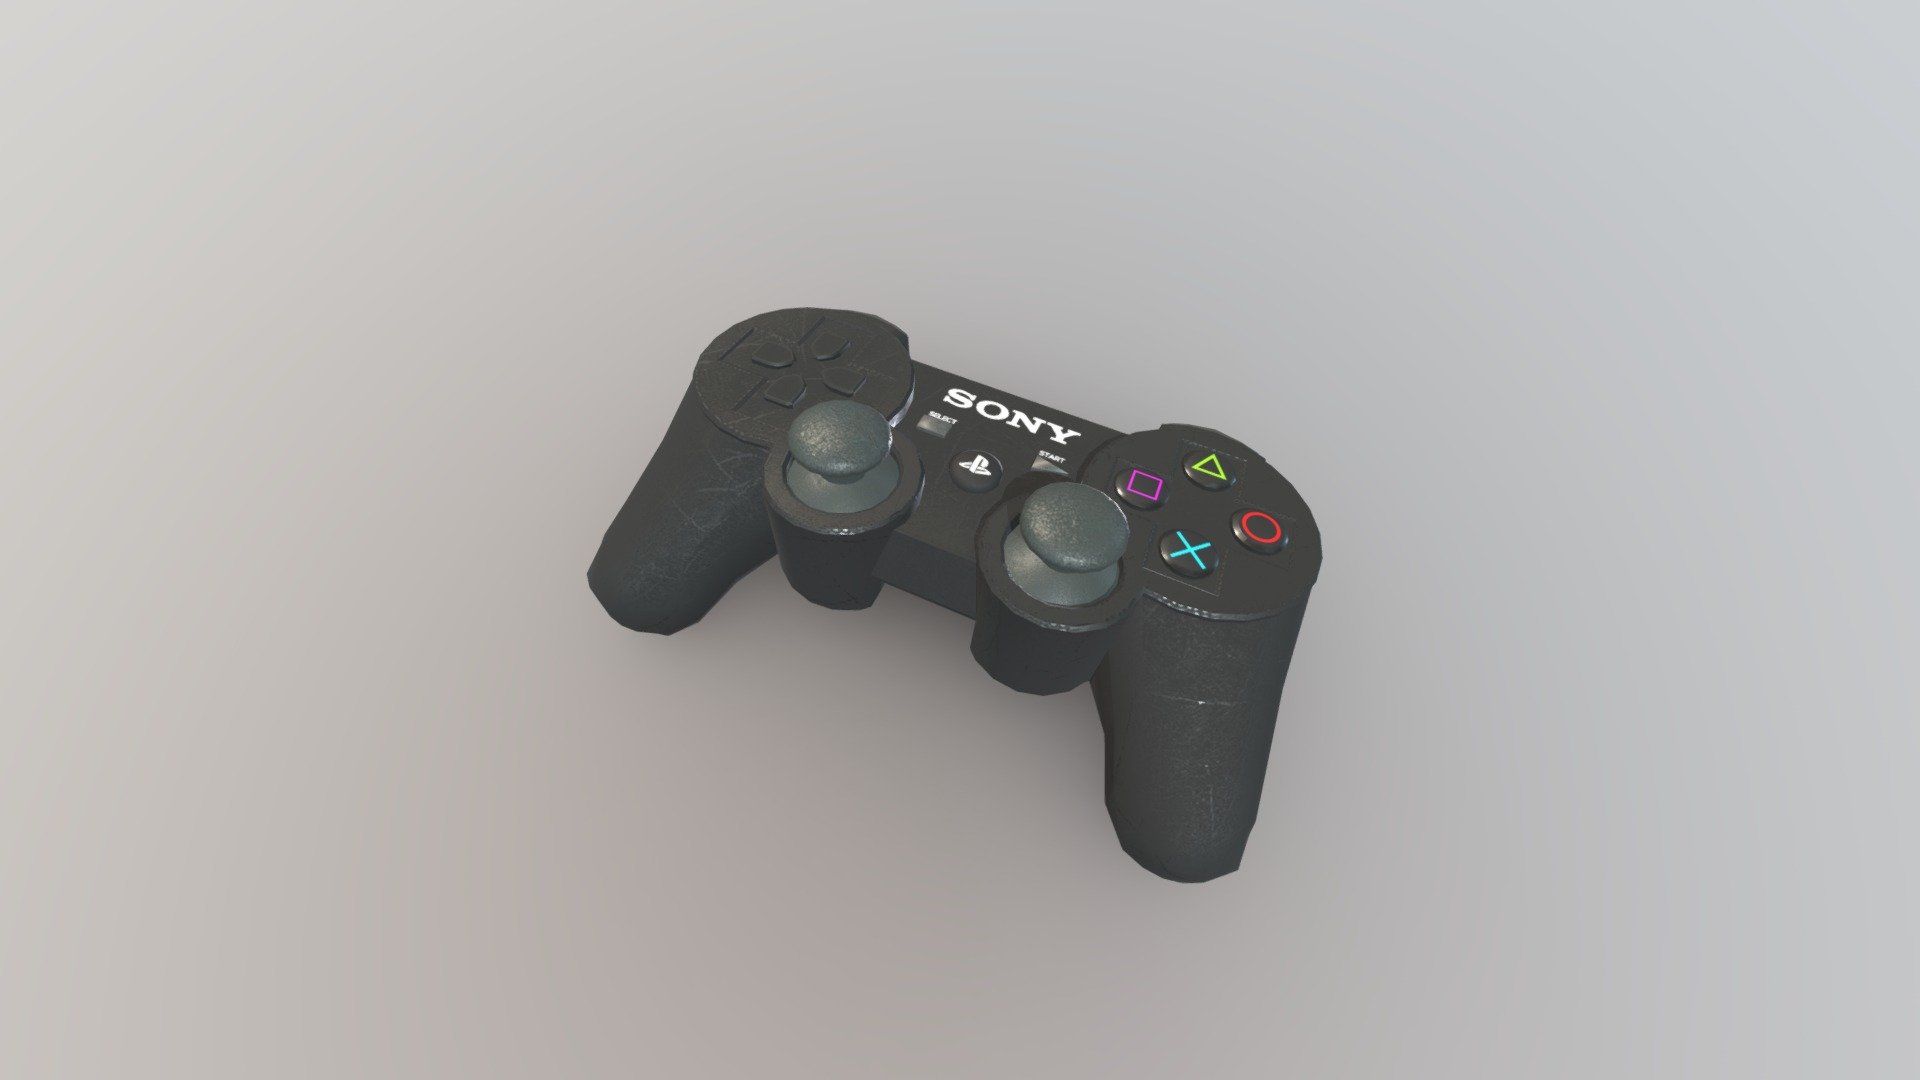 Dualshock
Dualshok 3
Sony
Playstation
play station 3
Controller
videogame
3d design - Dualshock 3 - 3D model by David.Salazar1 3d model